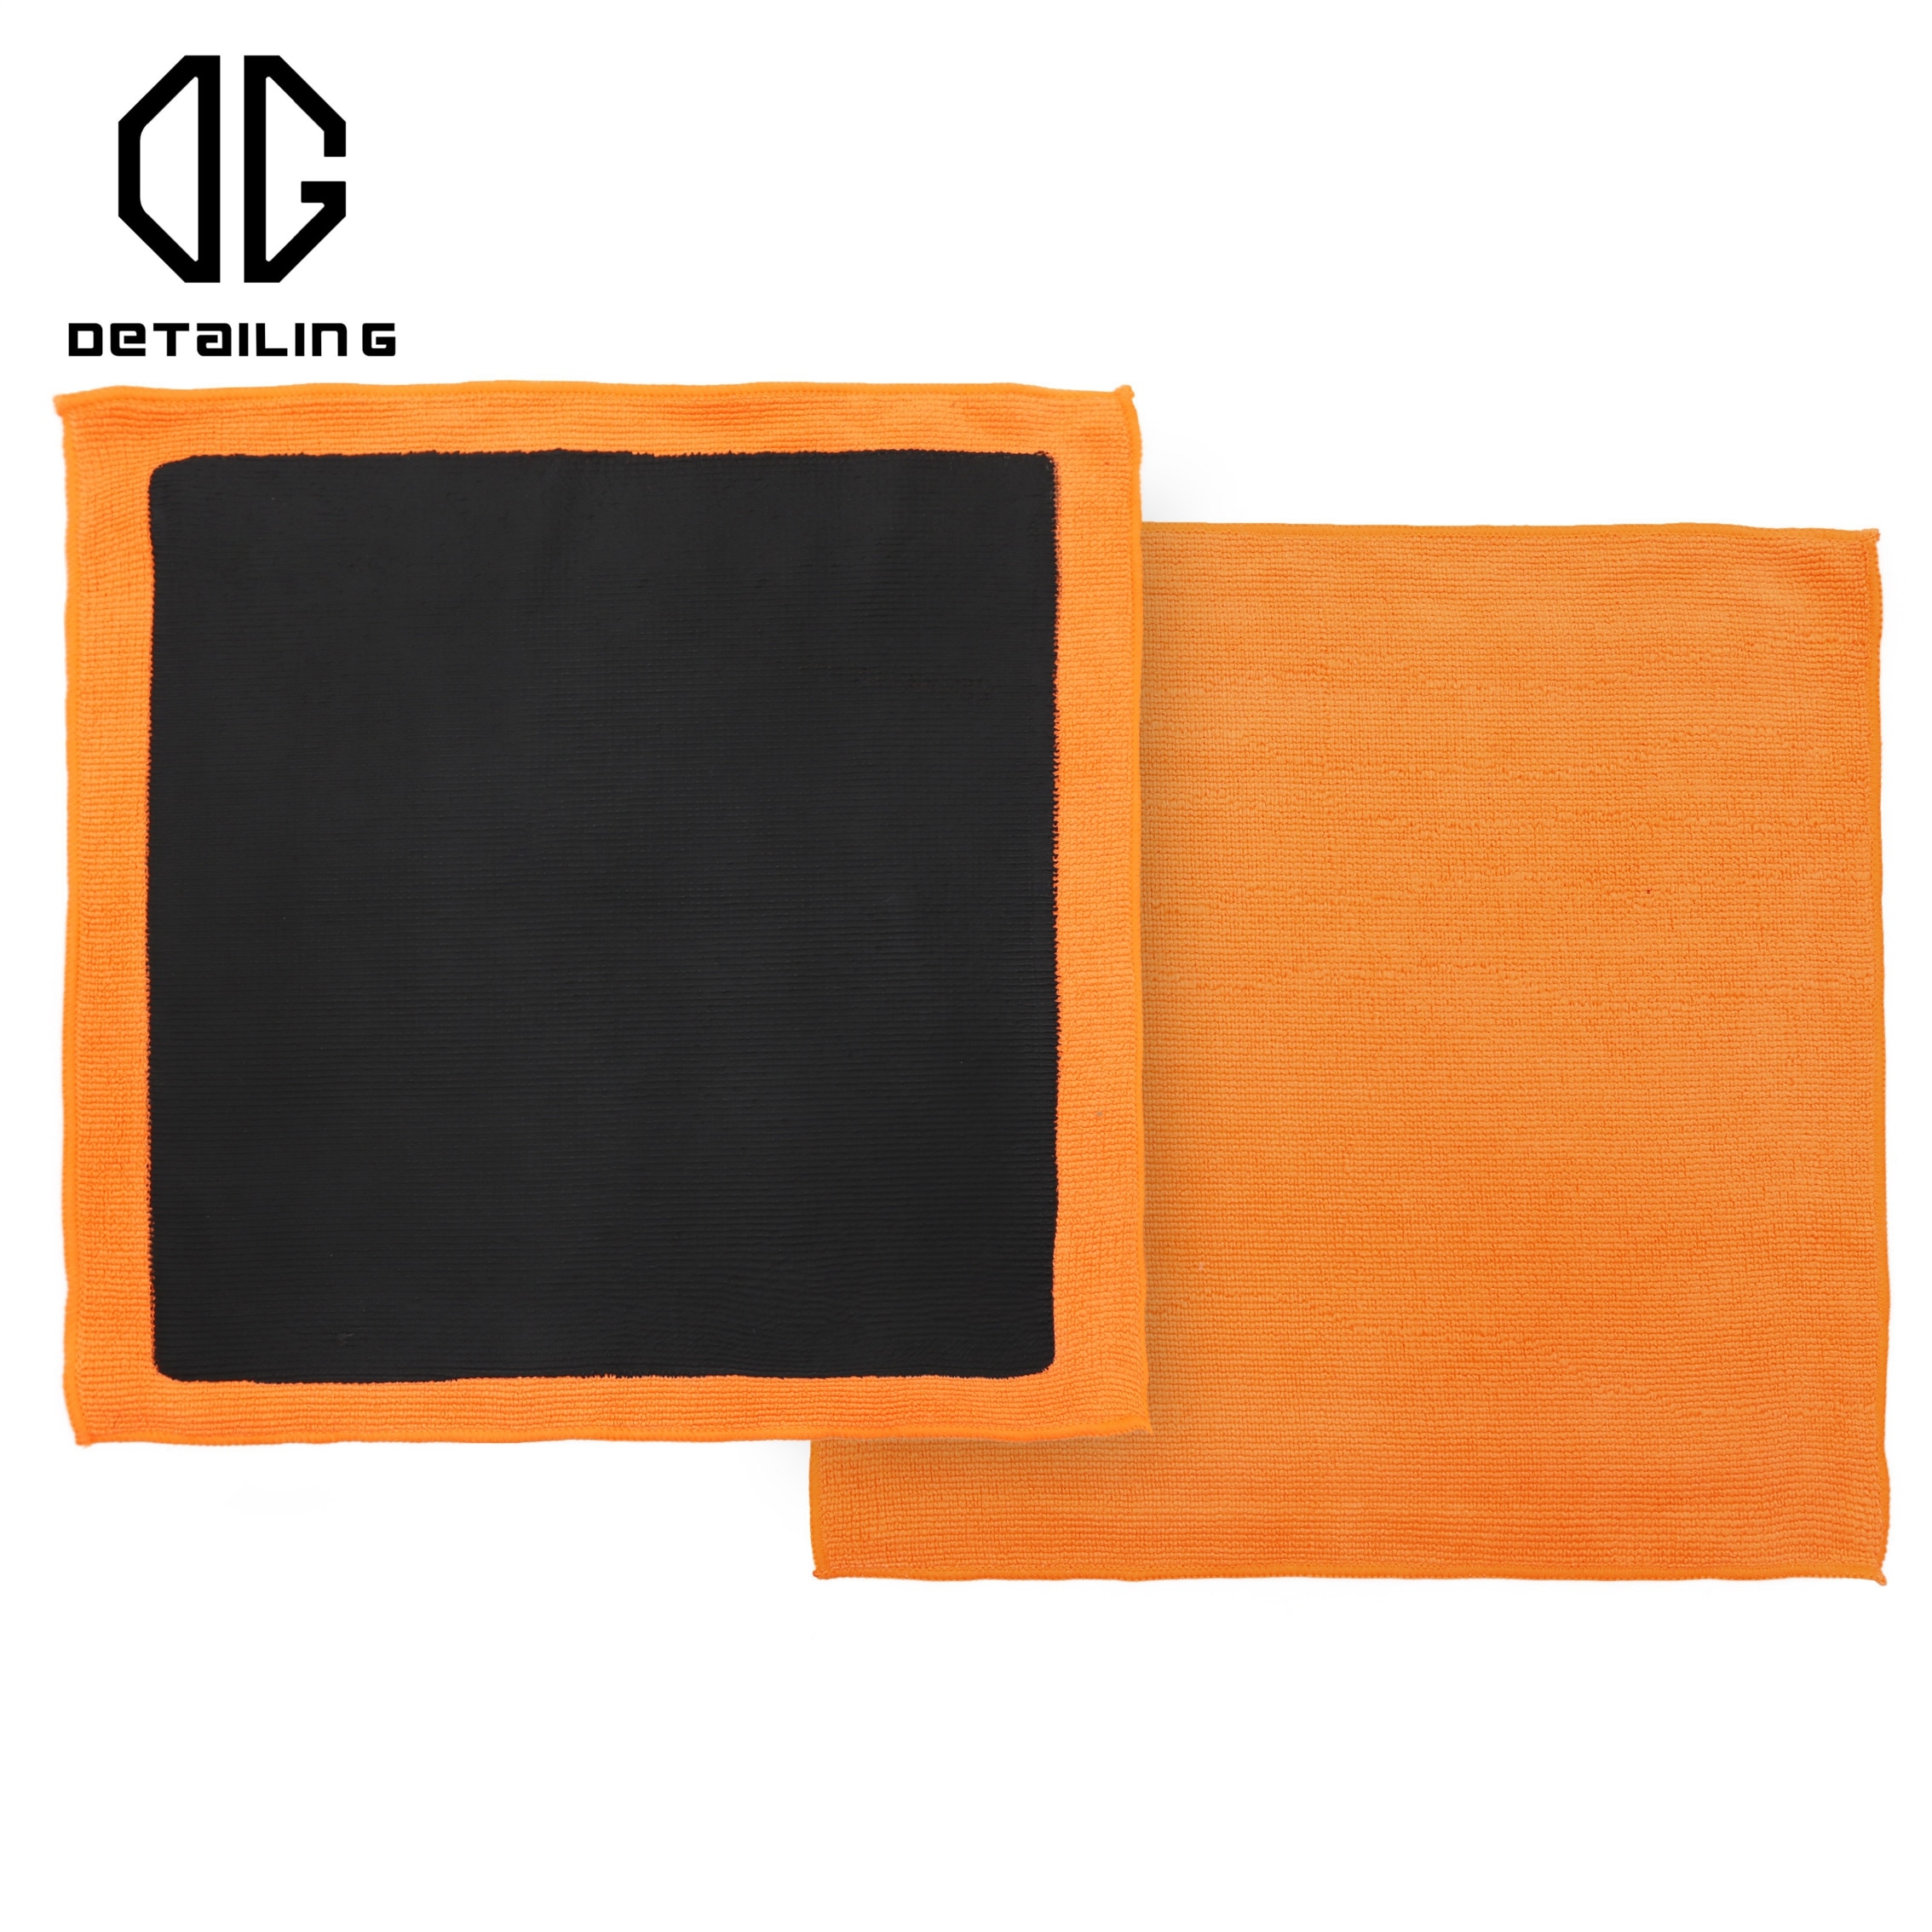 2.0 Orange Klei Handdoek Klei Kleding Klei Product Voor Auto Body Reiniging